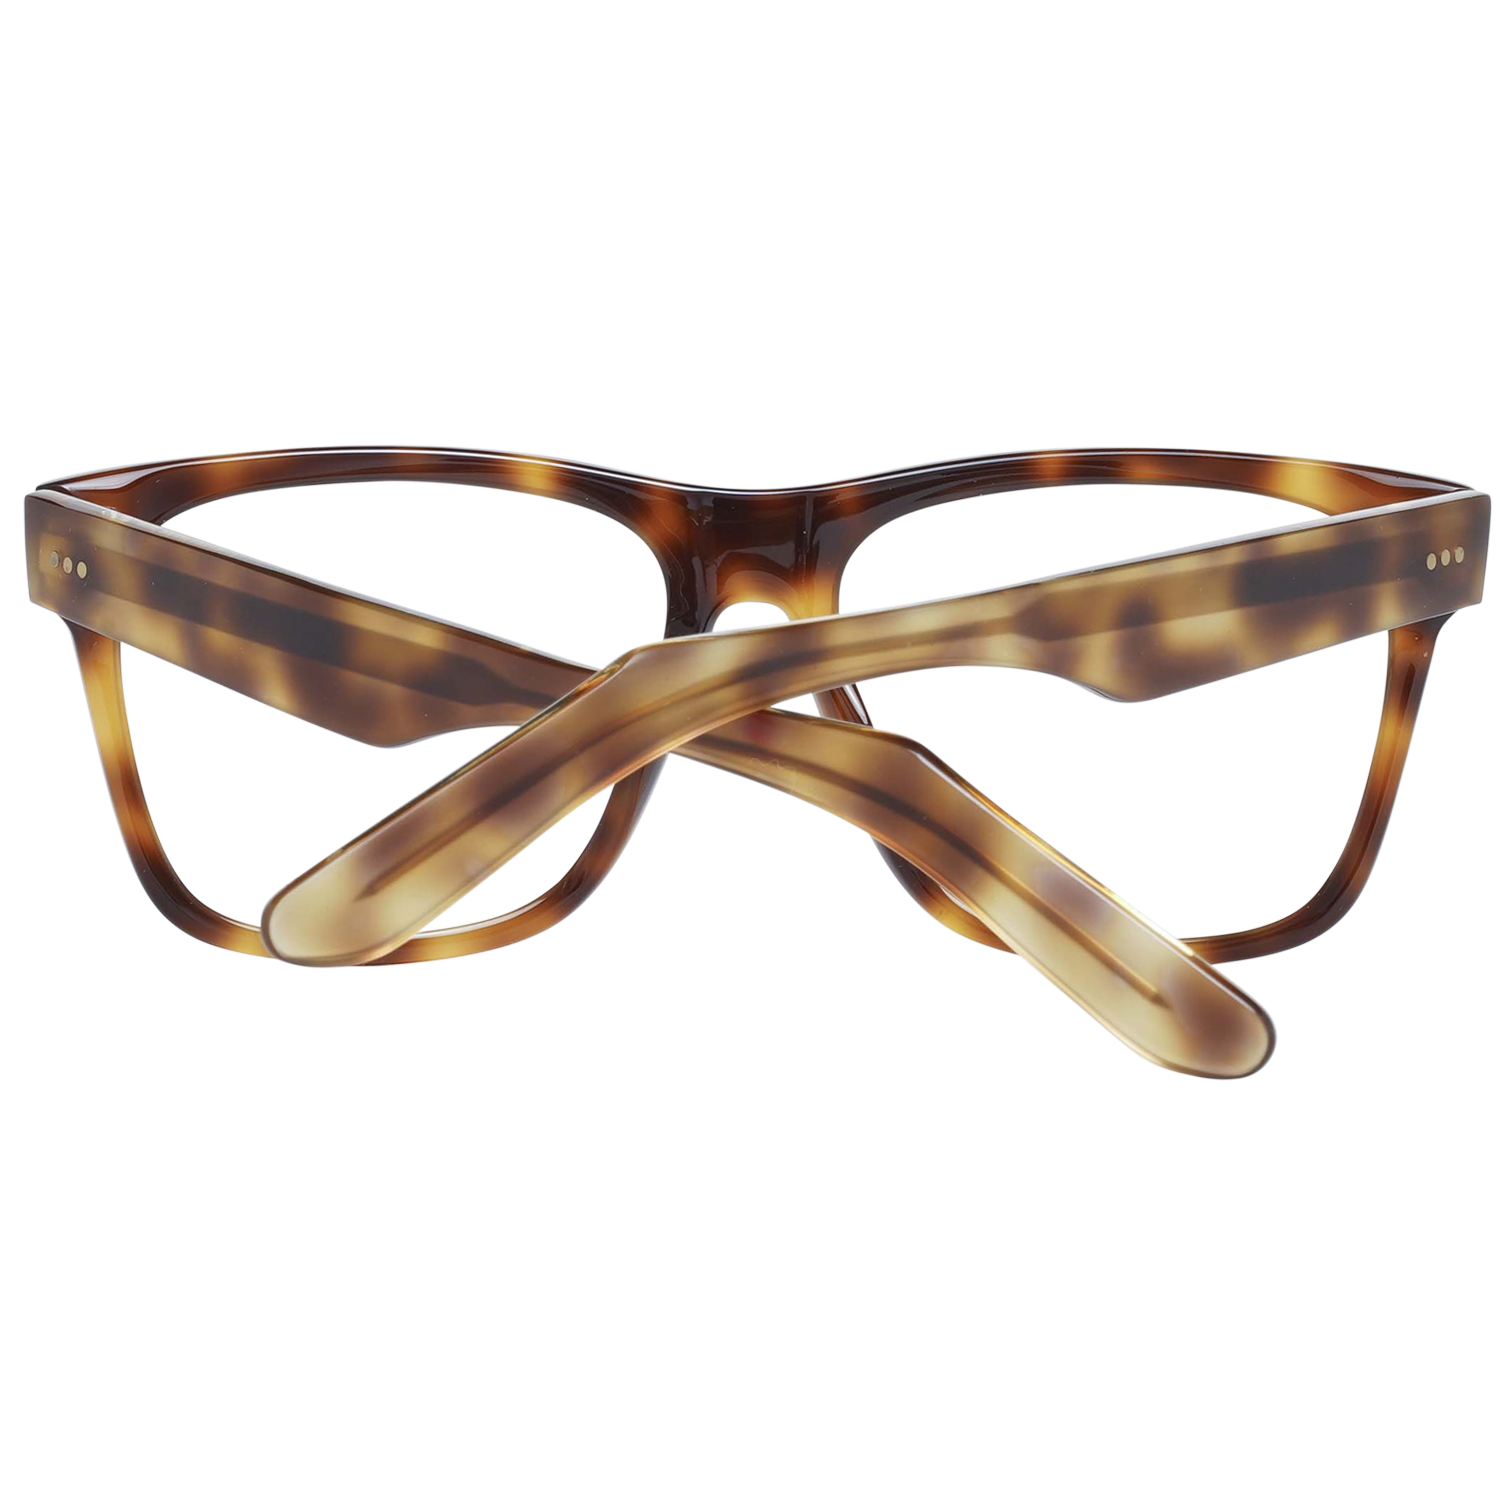 Sandro Frames Sandro Glasses Men Brown Havana Square Frames SD1002 201 54mm Eyeglasses Eyewear UK USA Australia 